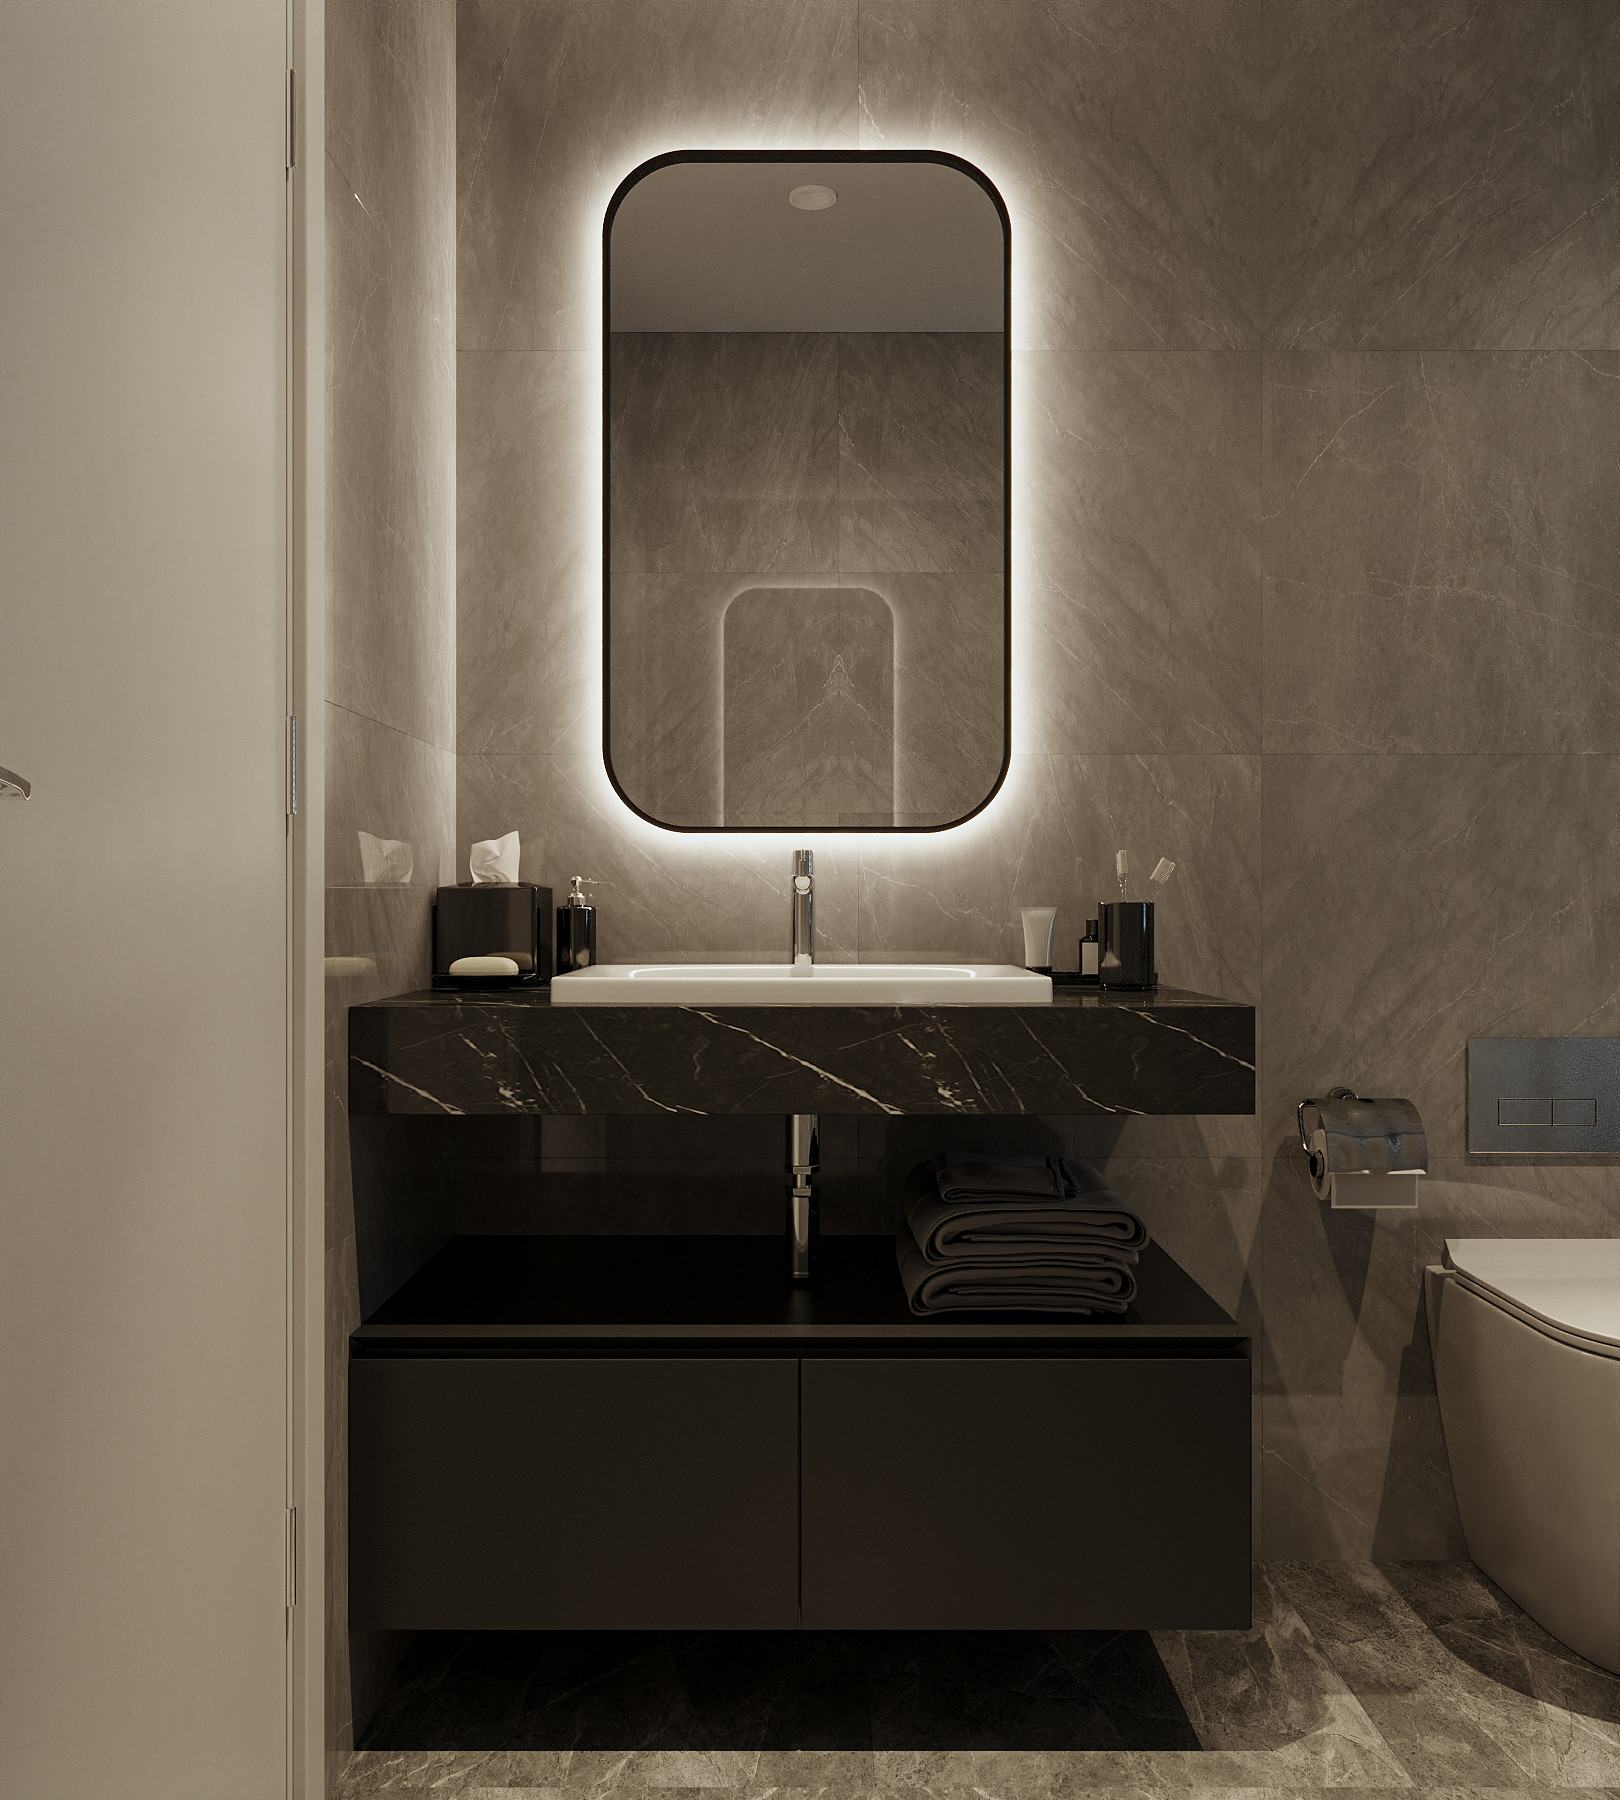 Phòng tắm, phong cách Hiện đại Modern, thiết kế concept nội thất, căn hộ Saigon Pearl Topaz 2